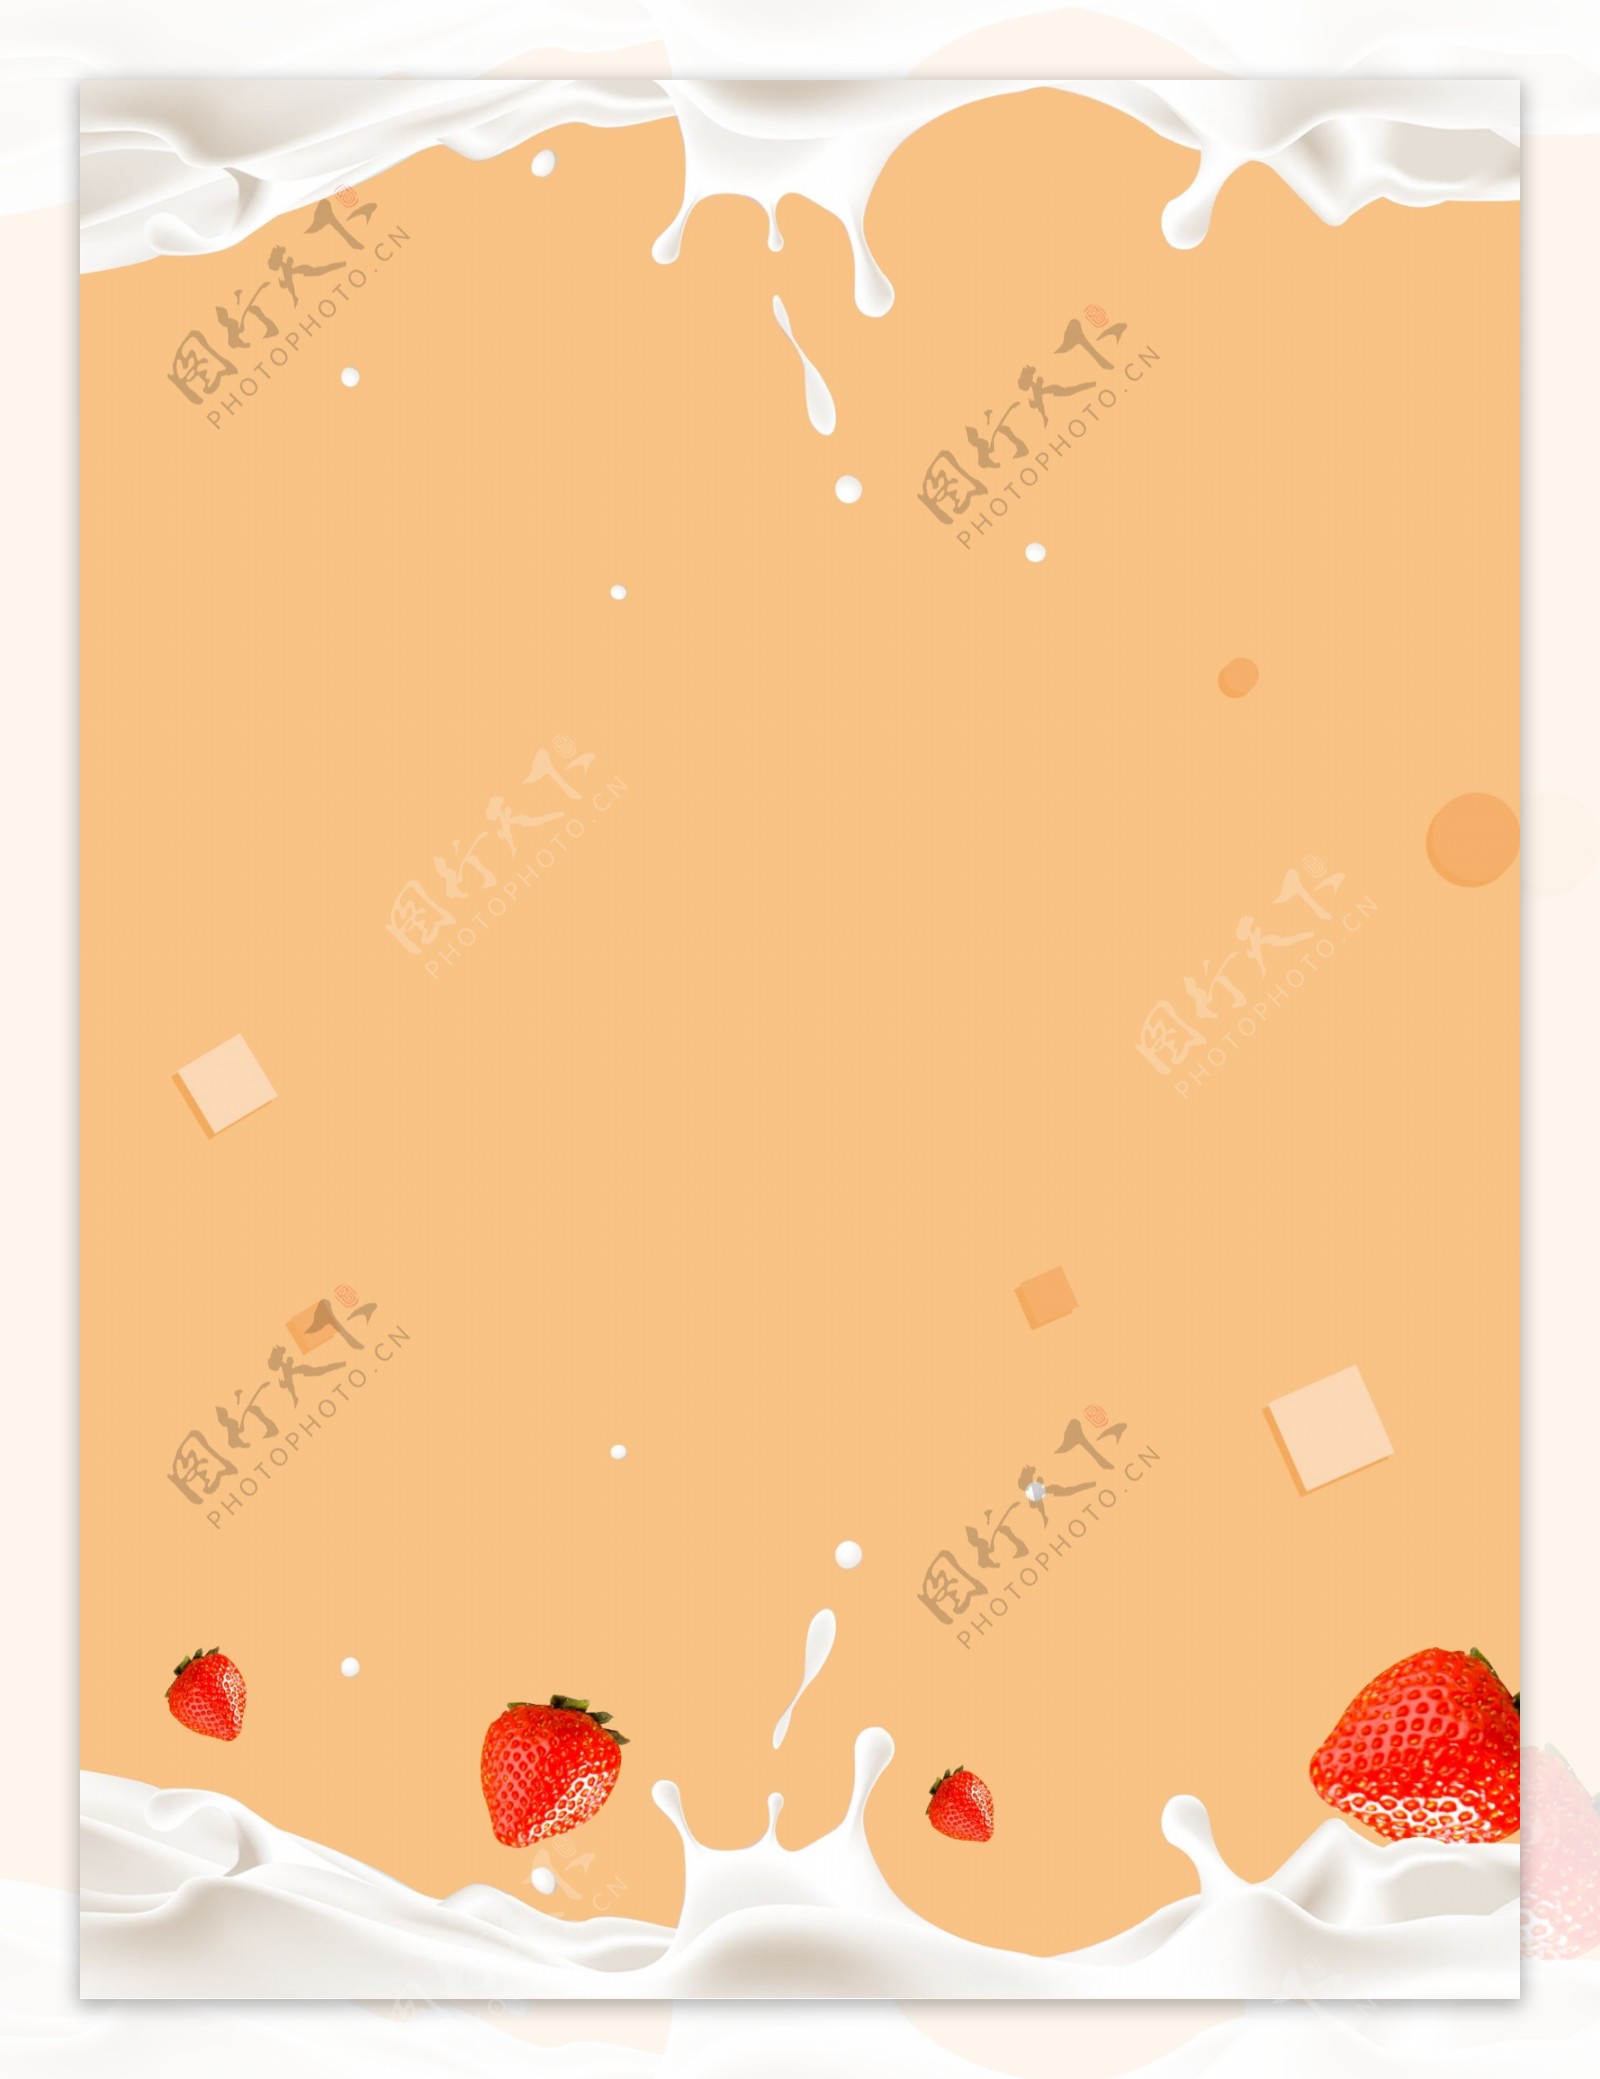 夏季草莓牛奶饮料背景素材